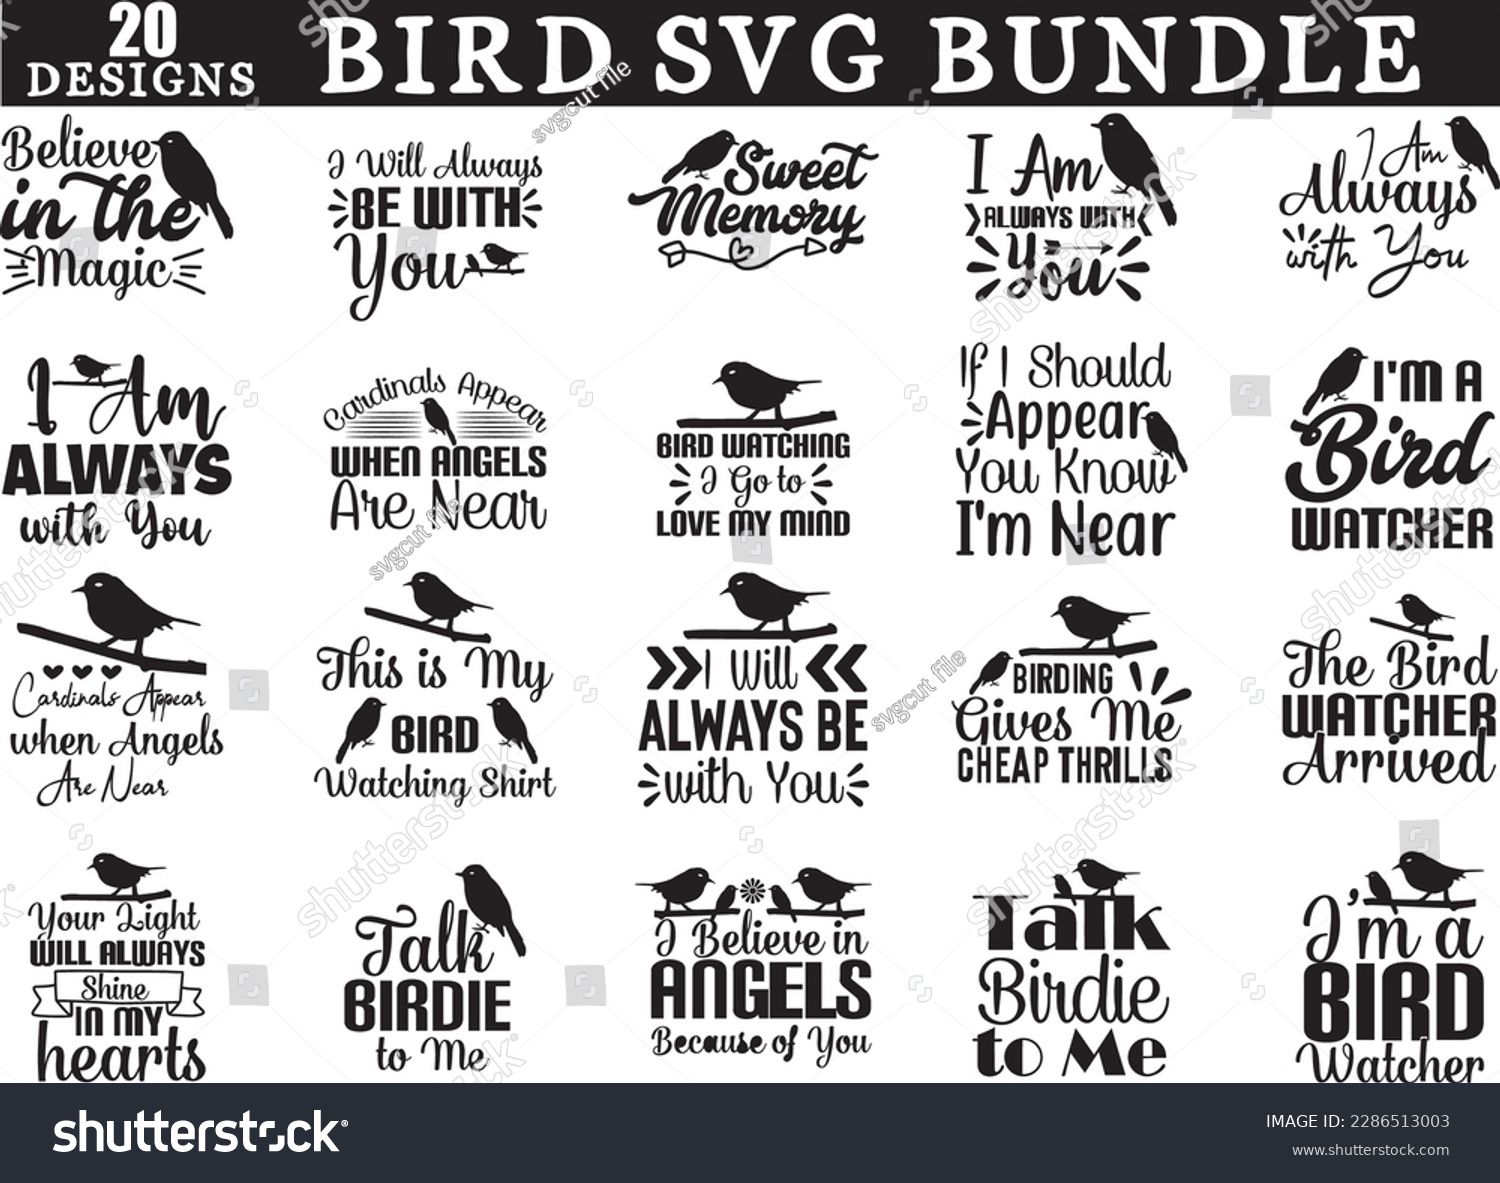 SVG of bird svg bundle, bird svg design, bird svg svg